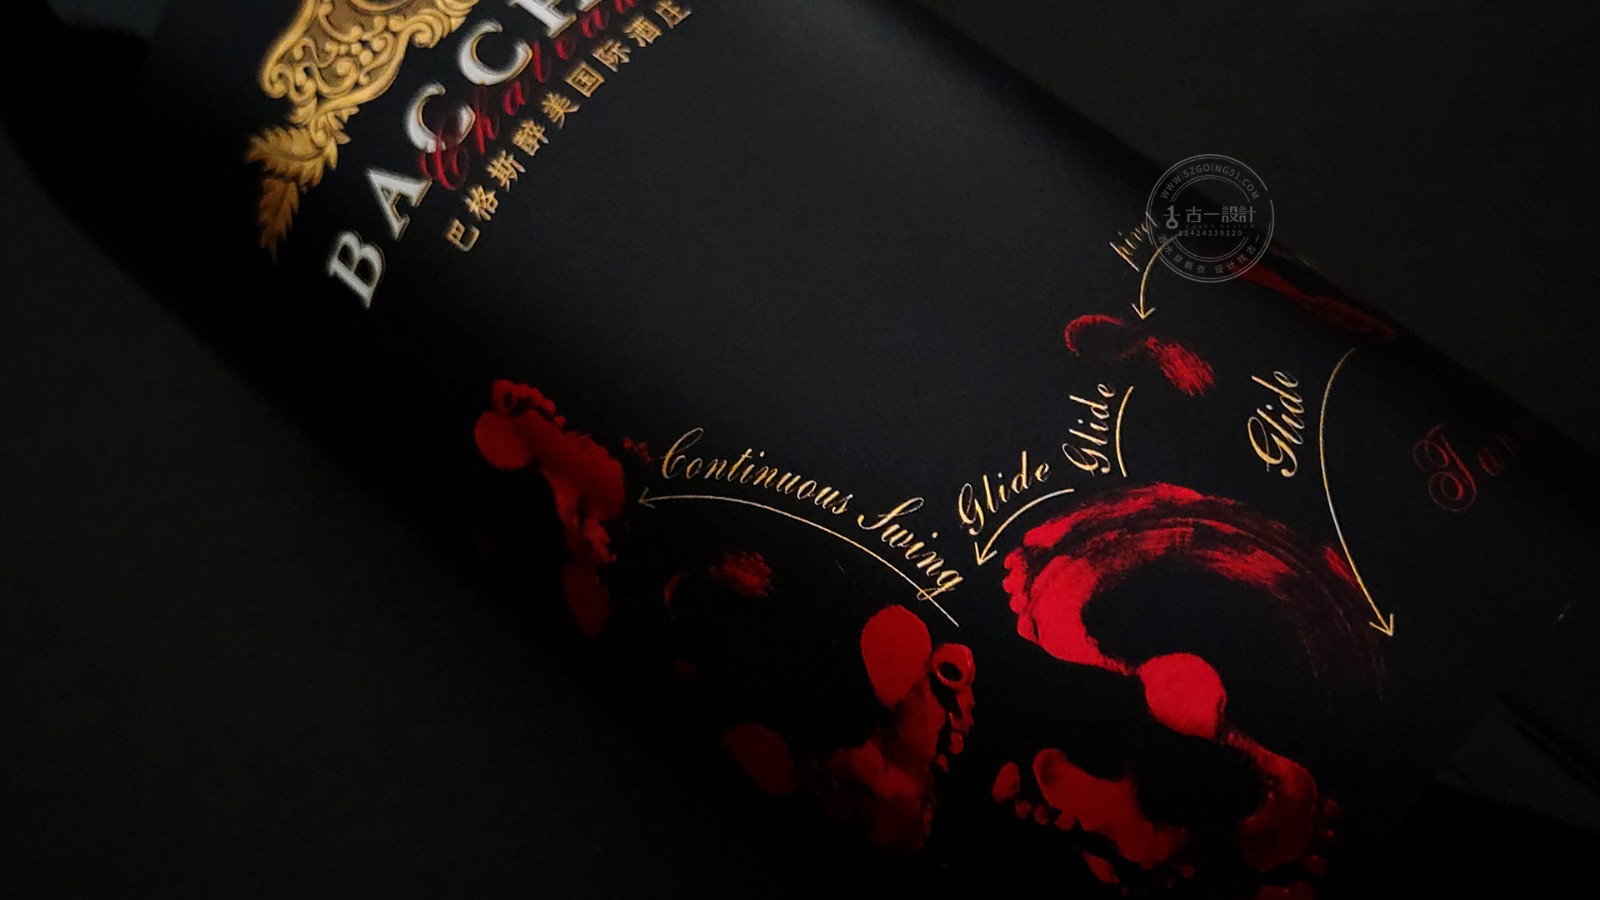 古一设计,巴格斯酒标设计,深圳红酒包装设计公司